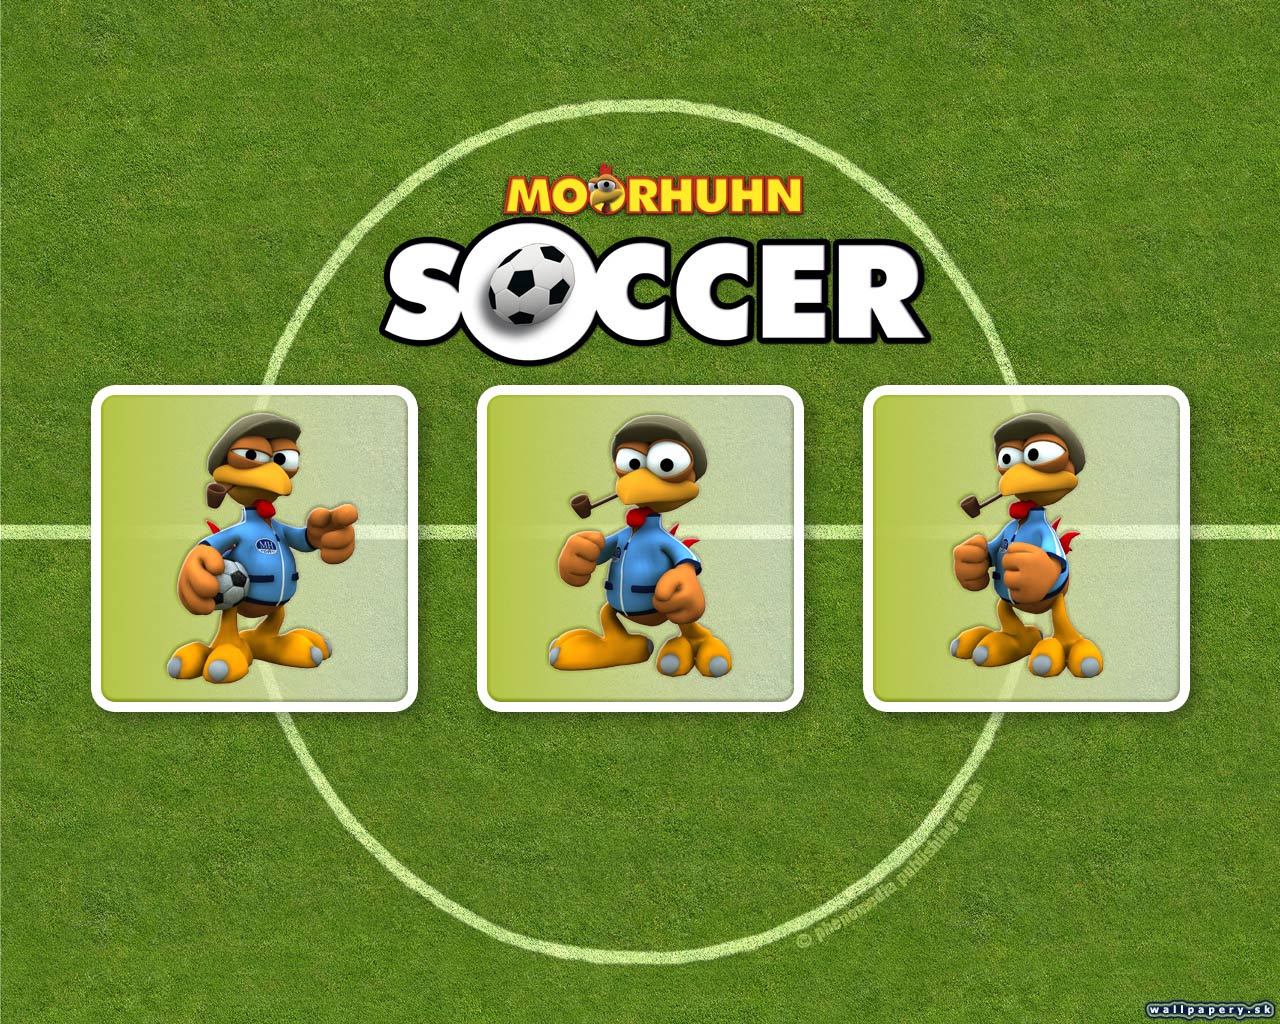 Moorhuhn Soccer - wallpaper 2